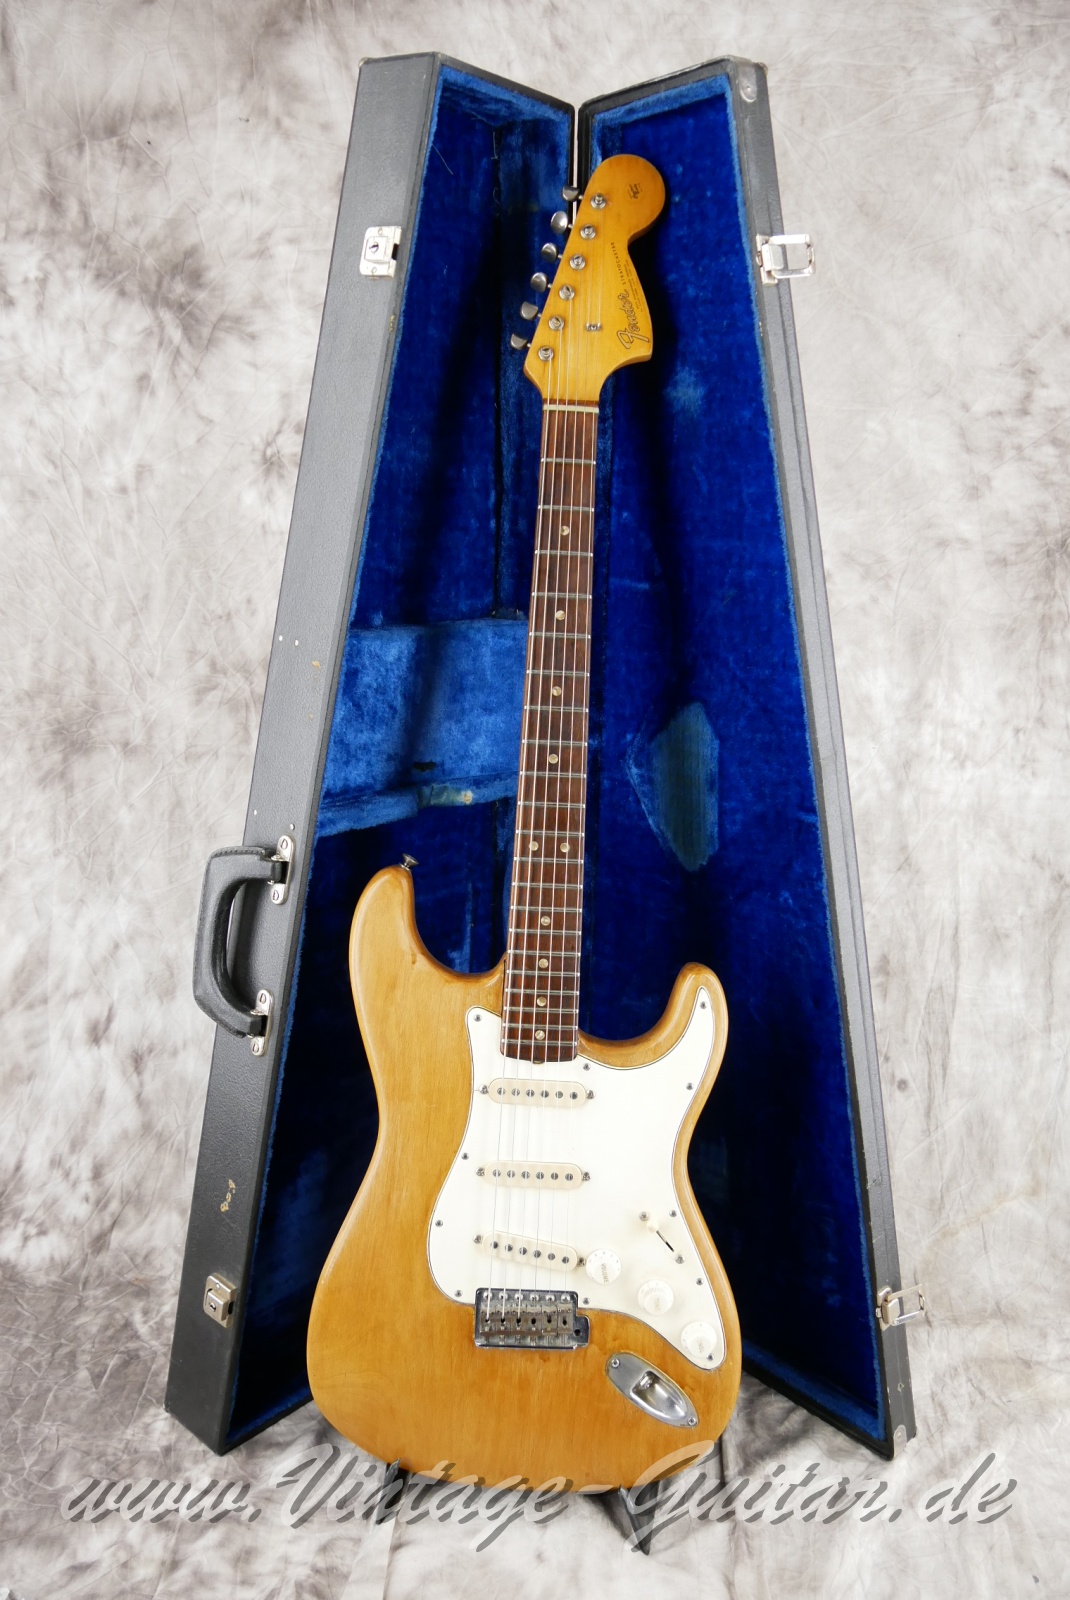 Fender_Stratocaster_body_stripped_1966-034.JPG